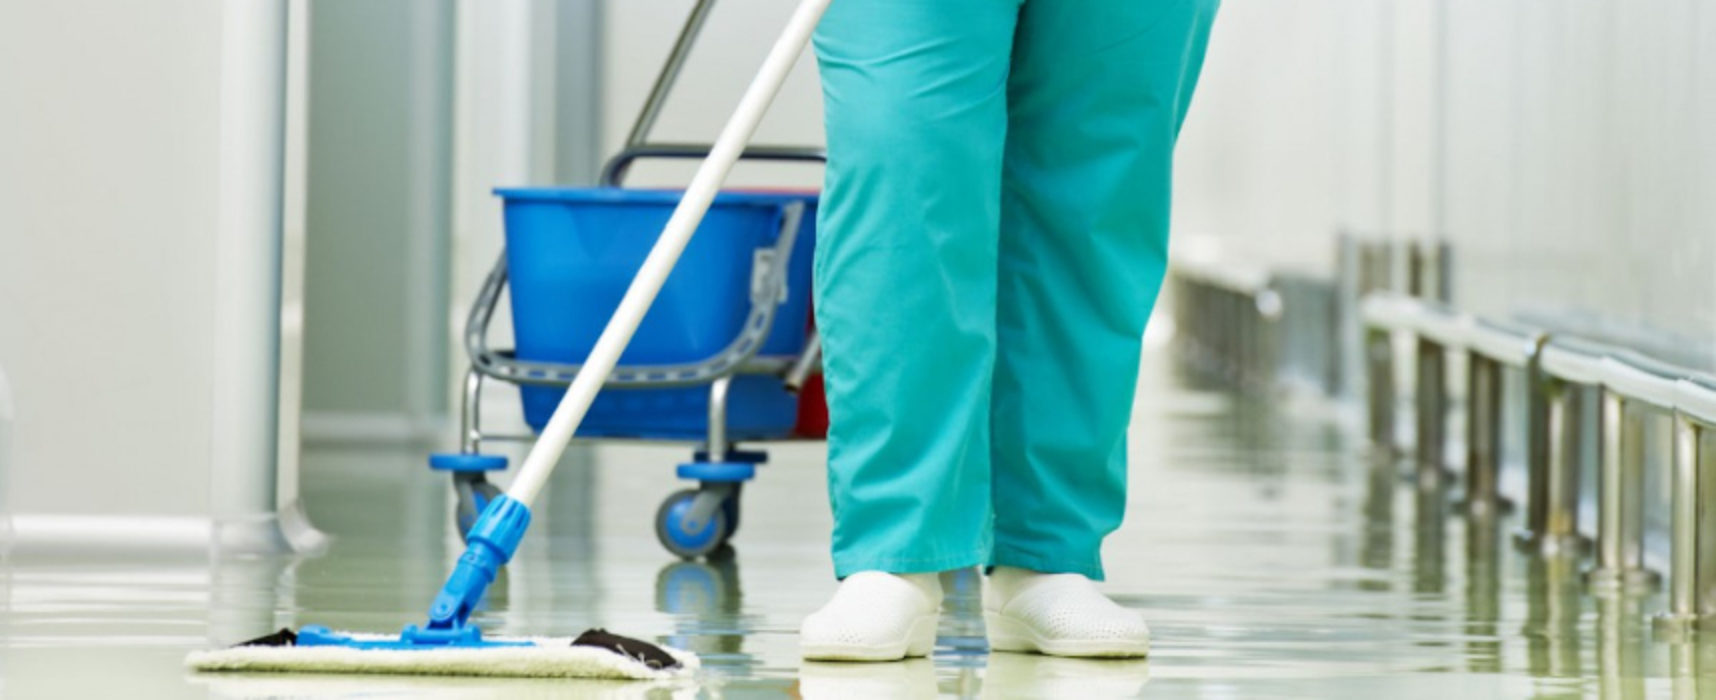 Lavoro, Sanitaservice Asl Bt cerca 33 addetti alle pulizie negli ospedali della Provincia